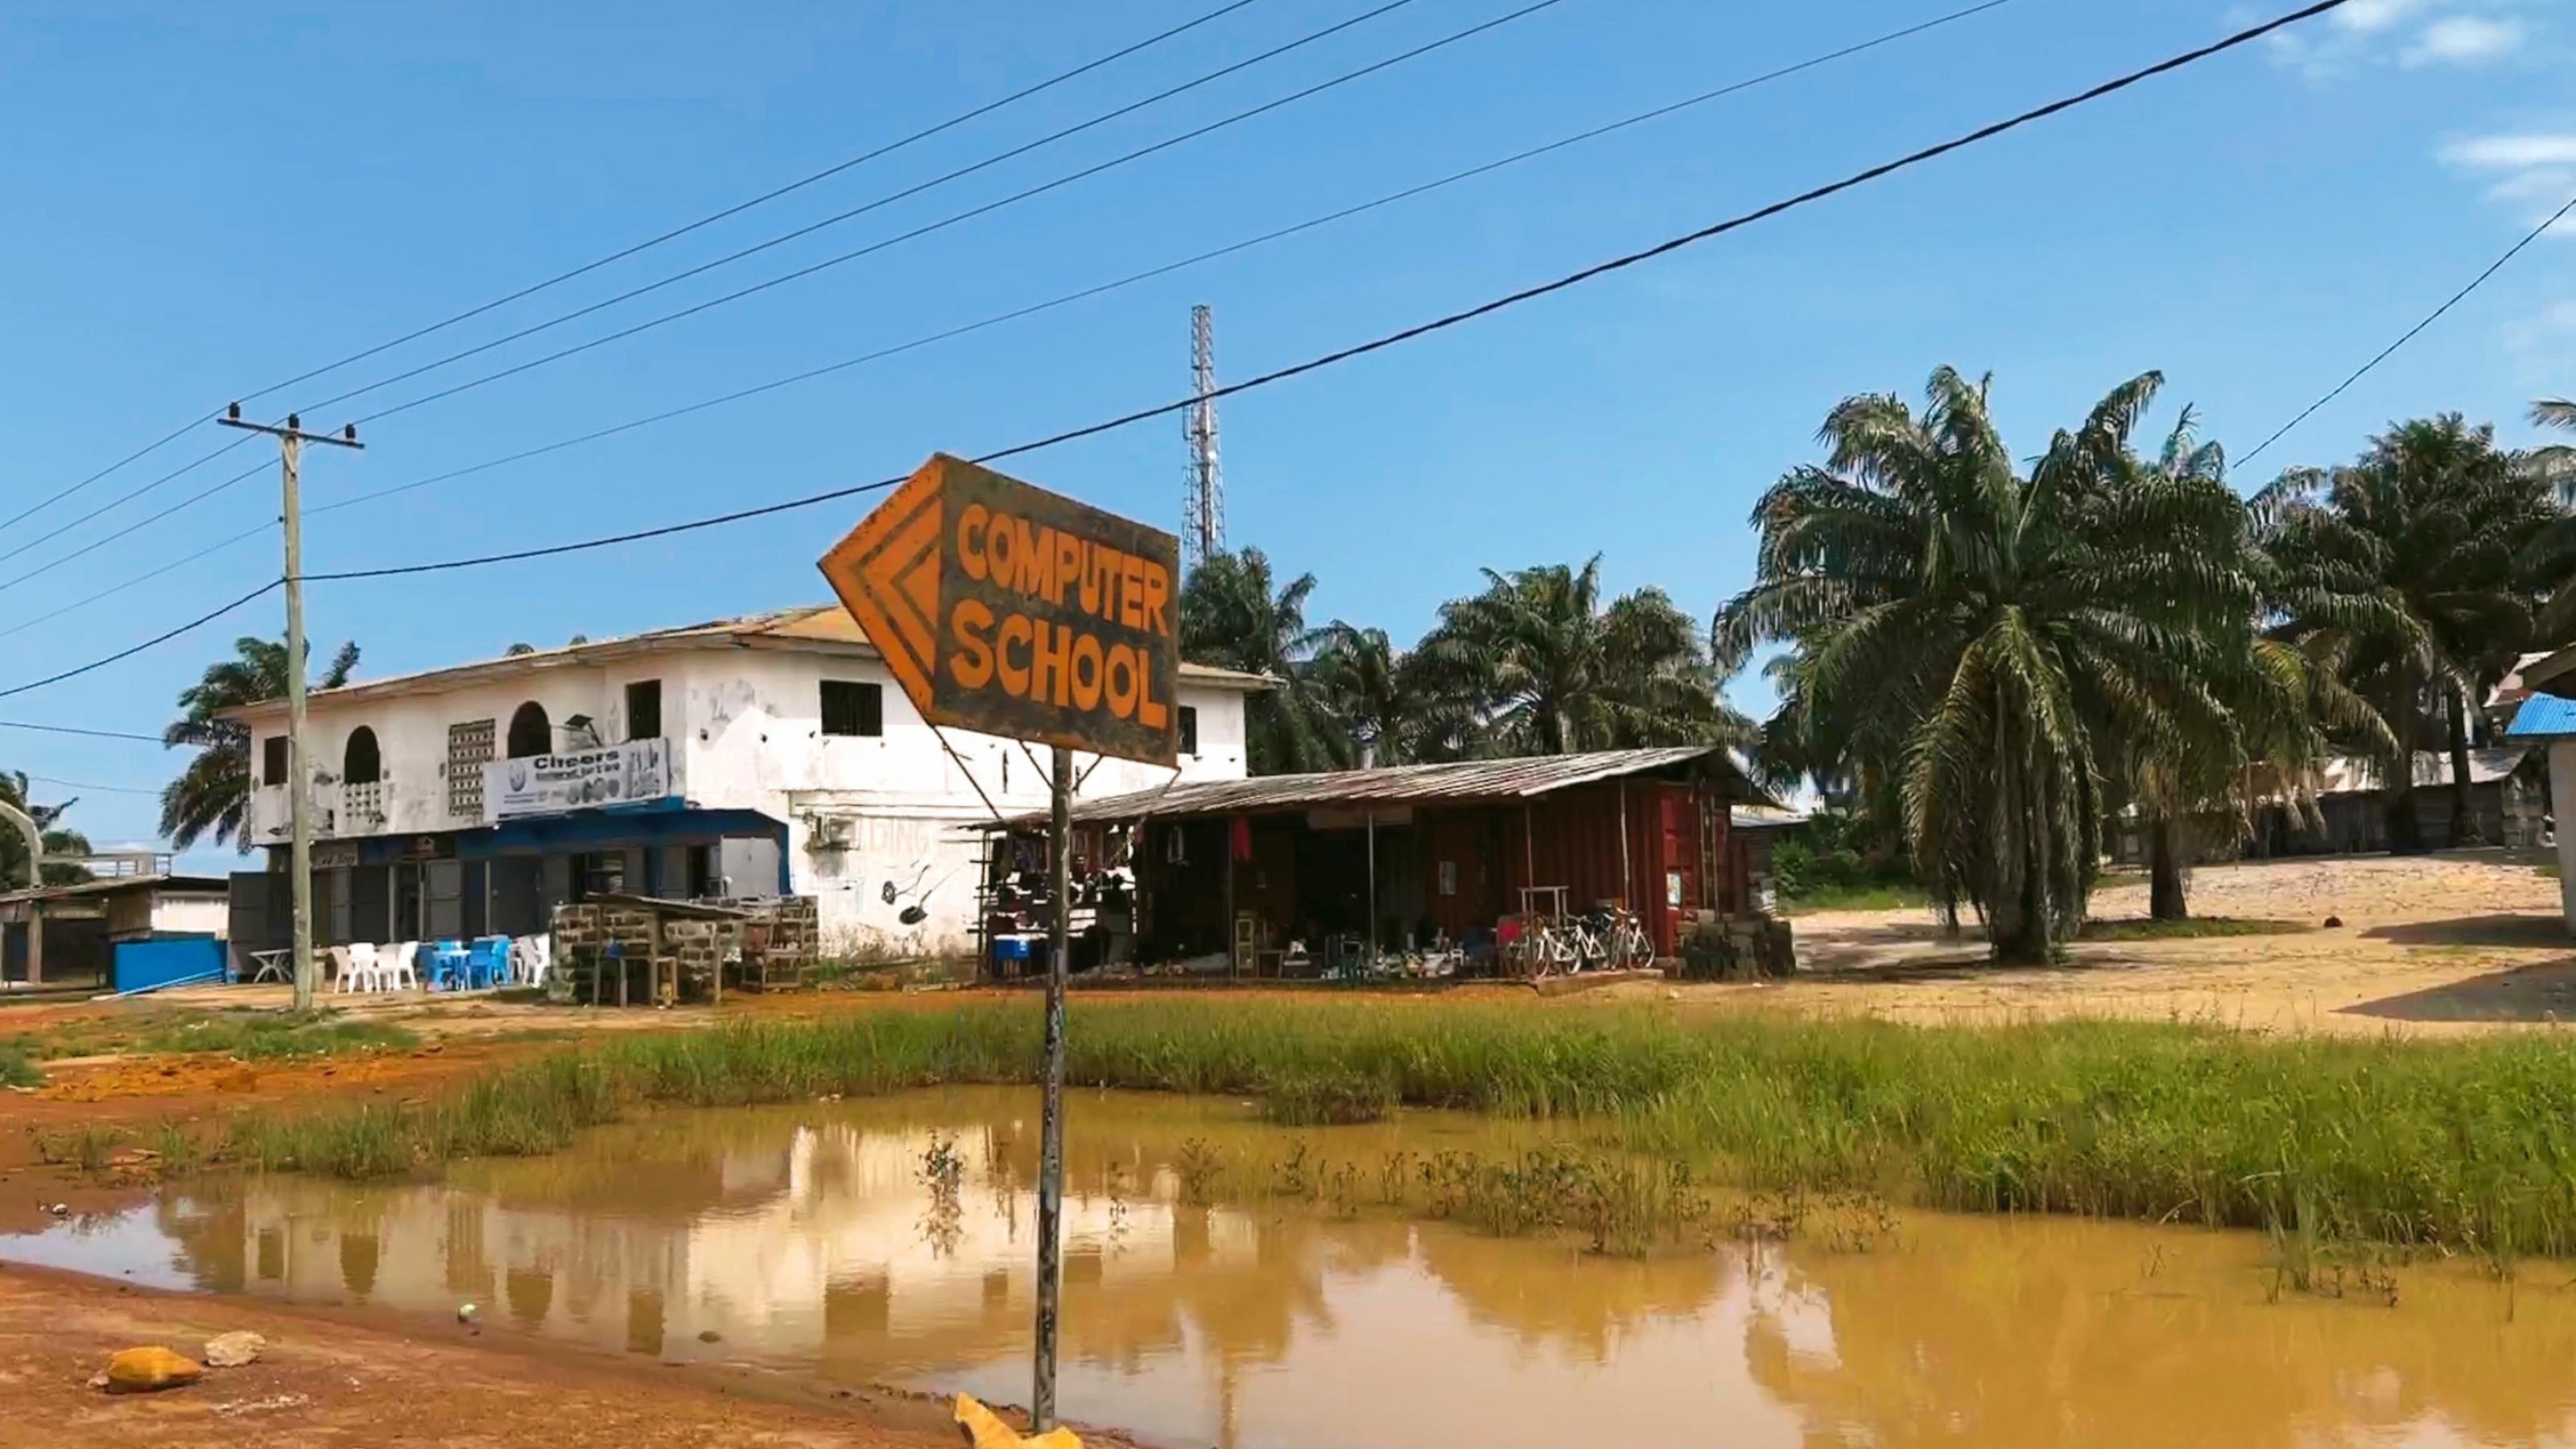 Ein Schild weist den Weg zu einer Computerschule im ländlichen Liberia, Westafrika.